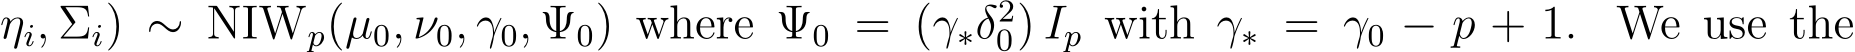 ηi, Σi) ∼ NIWp(µ0, ν0, γ0, Ψ0) where Ψ0 = (γ∗δ20) Ip with γ∗ = γ0 − p + 1. We use the